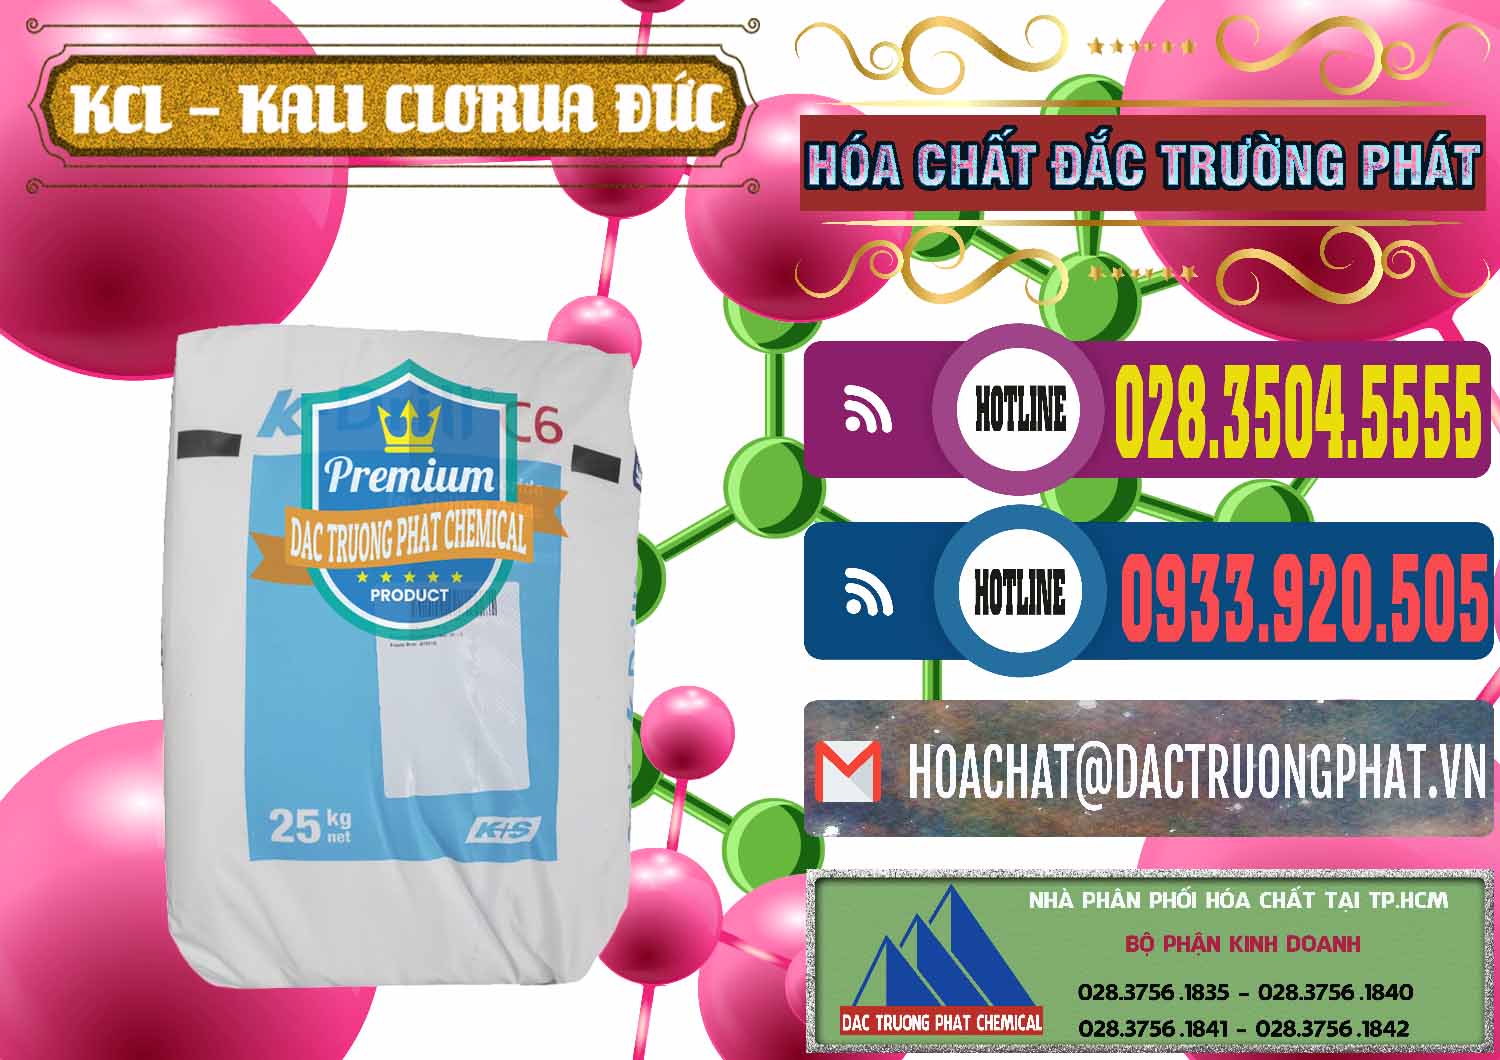 Cty cung ứng & bán KCL – Kali Clorua Trắng K DRILL Đức Germany - 0428 - Chuyên phân phối & cung cấp hóa chất tại TP.HCM - muabanhoachat.com.vn